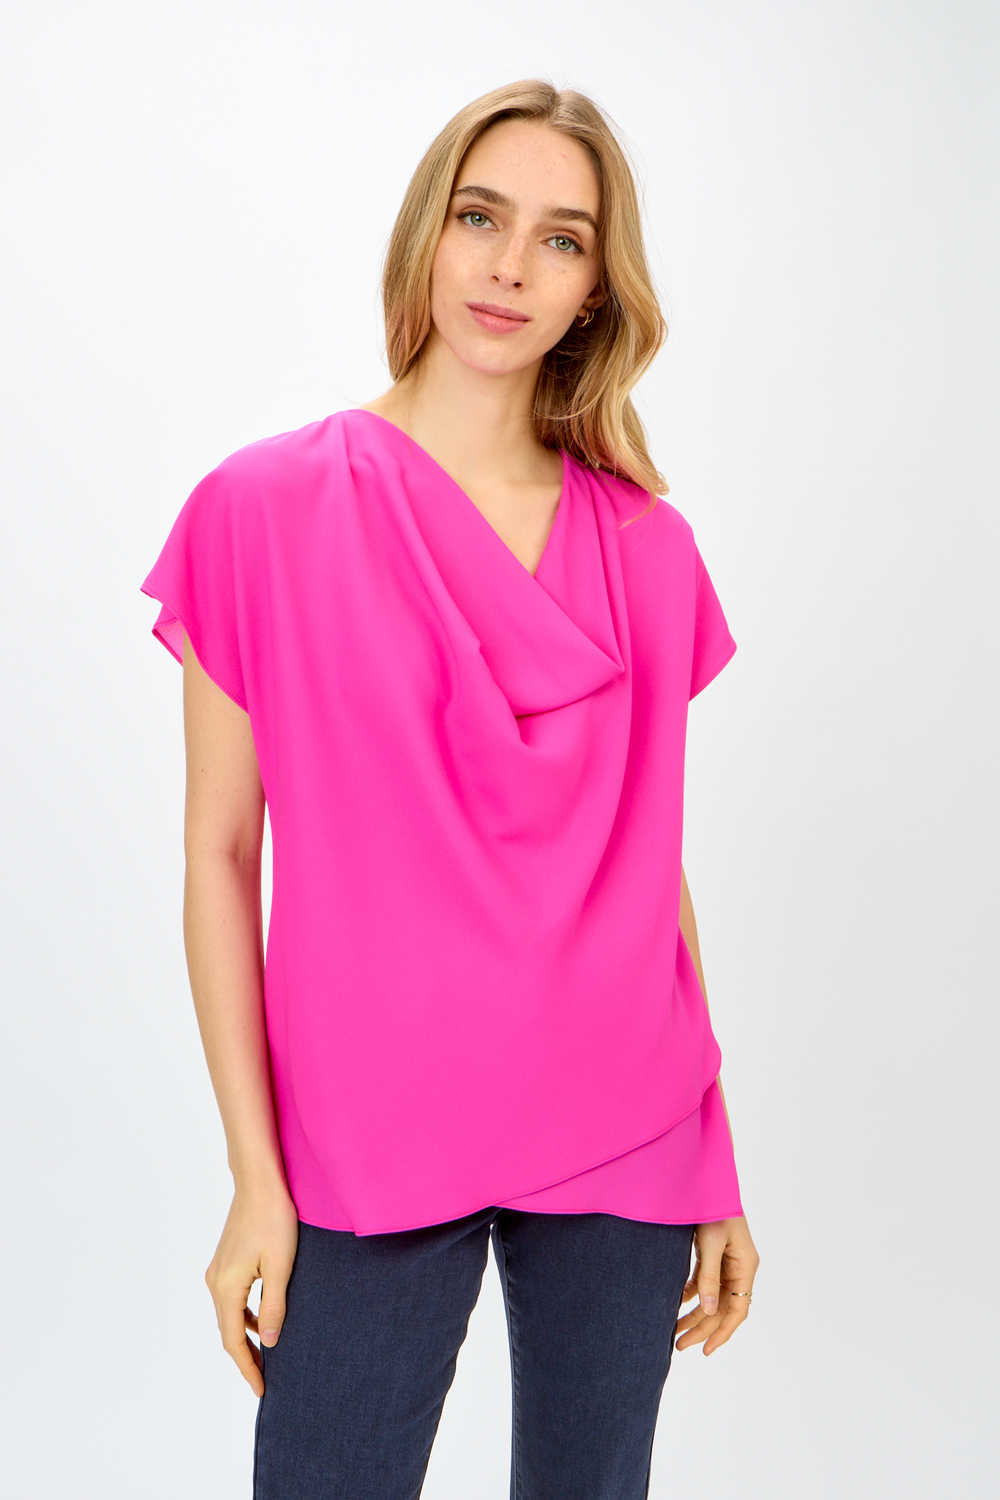 T-shirt volanté, encolure ondulée modèle 242027. Ultra Pink